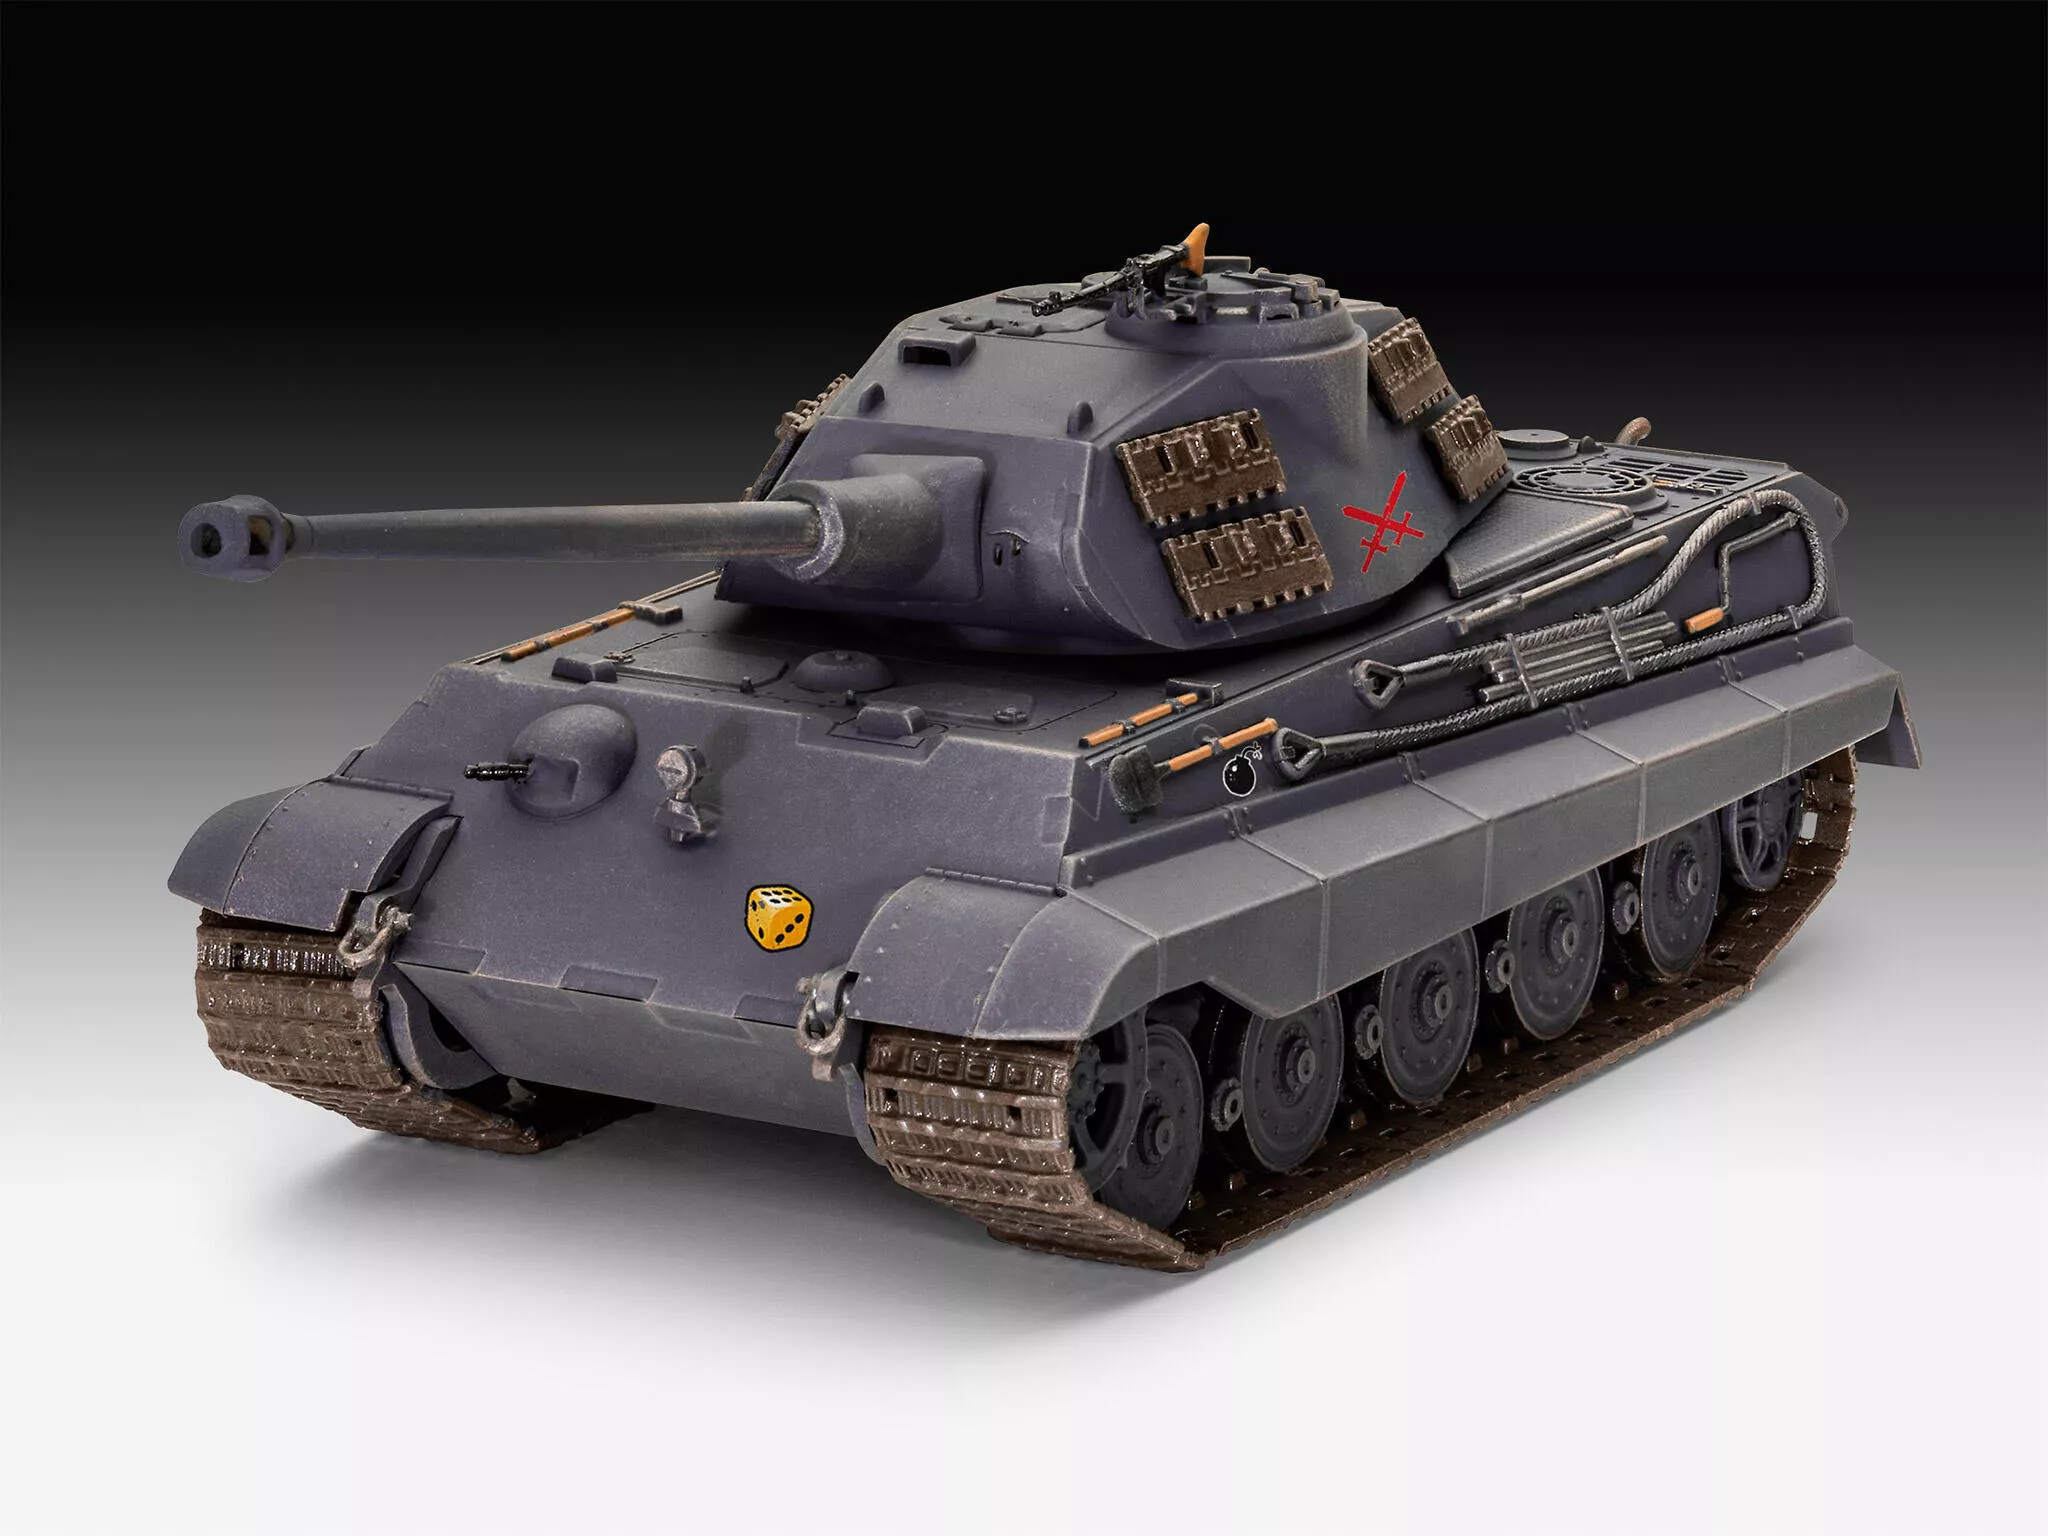 Revell 3503 Tiger II Ausf. B "Königstiger" "World of Tanks" Revell Modellbausatz